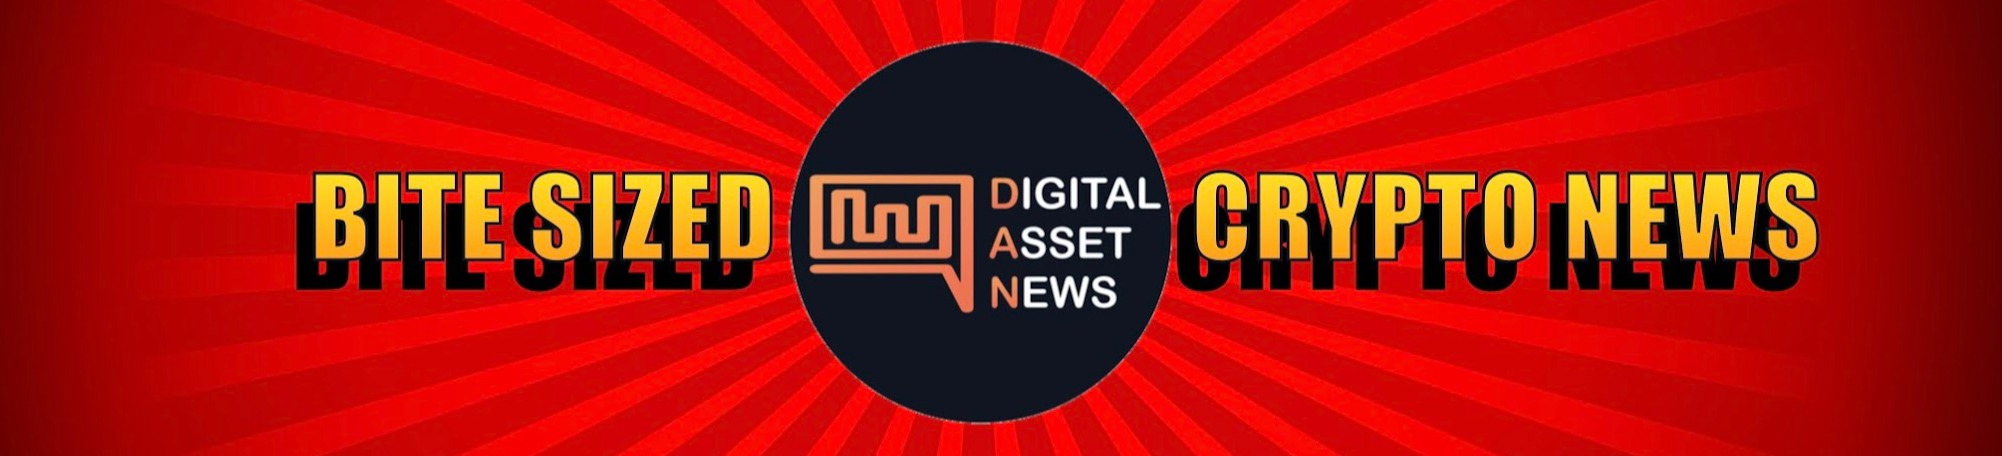 Digital Asset News